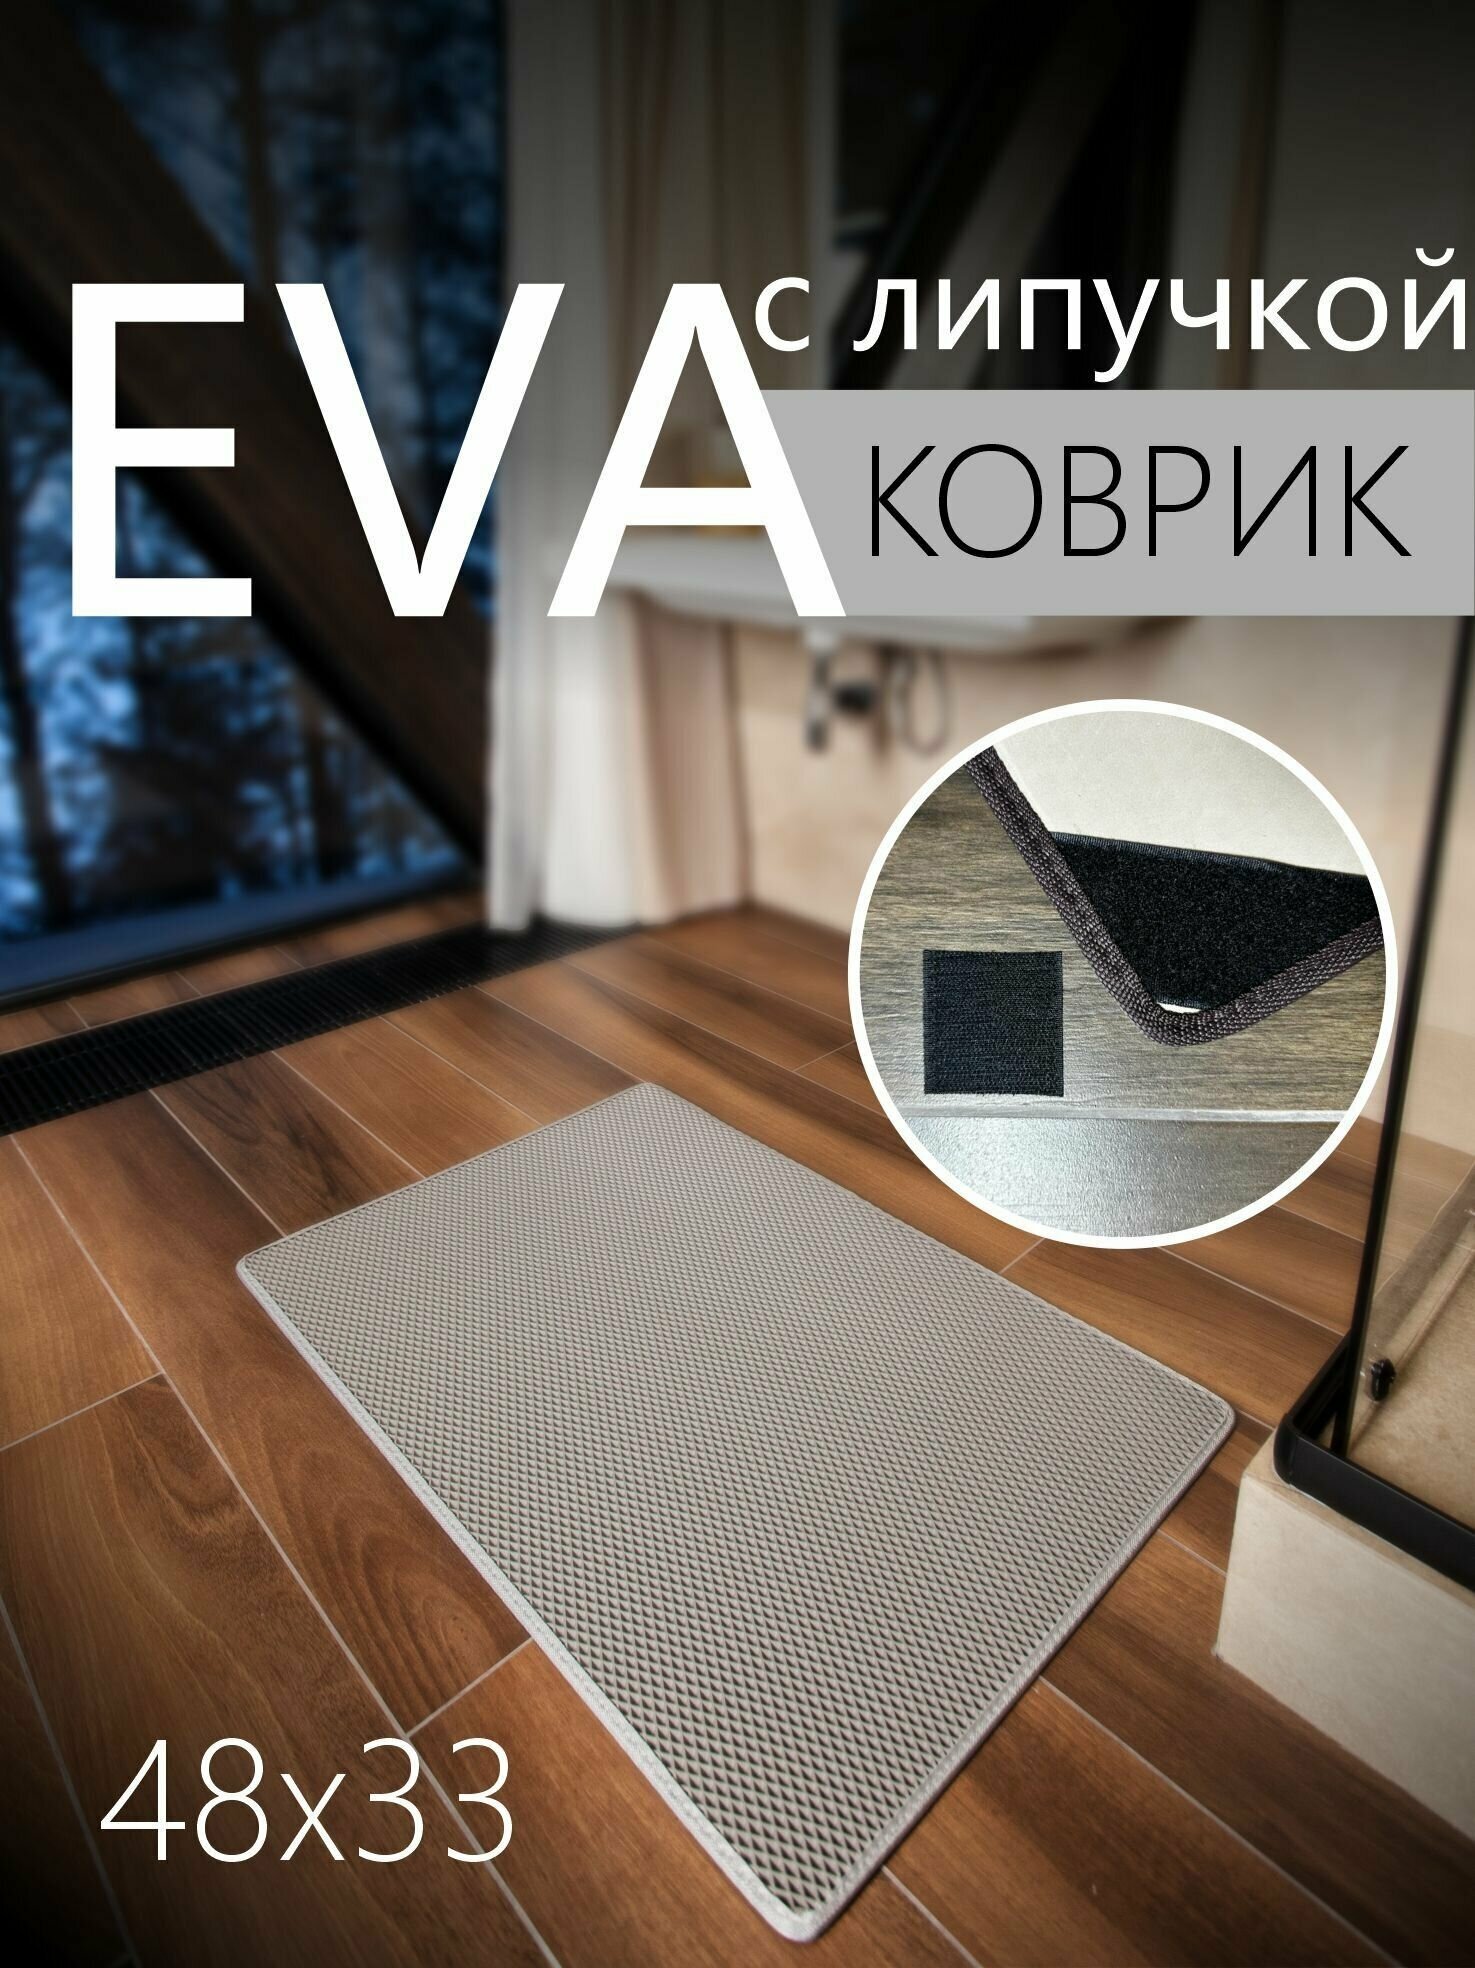 Коврик придверный противоскользящий EVA ЭВА универсальный 48х33 сантиметра. Липучки для фиксации. Ромб Серый со светло-серой окантовкой